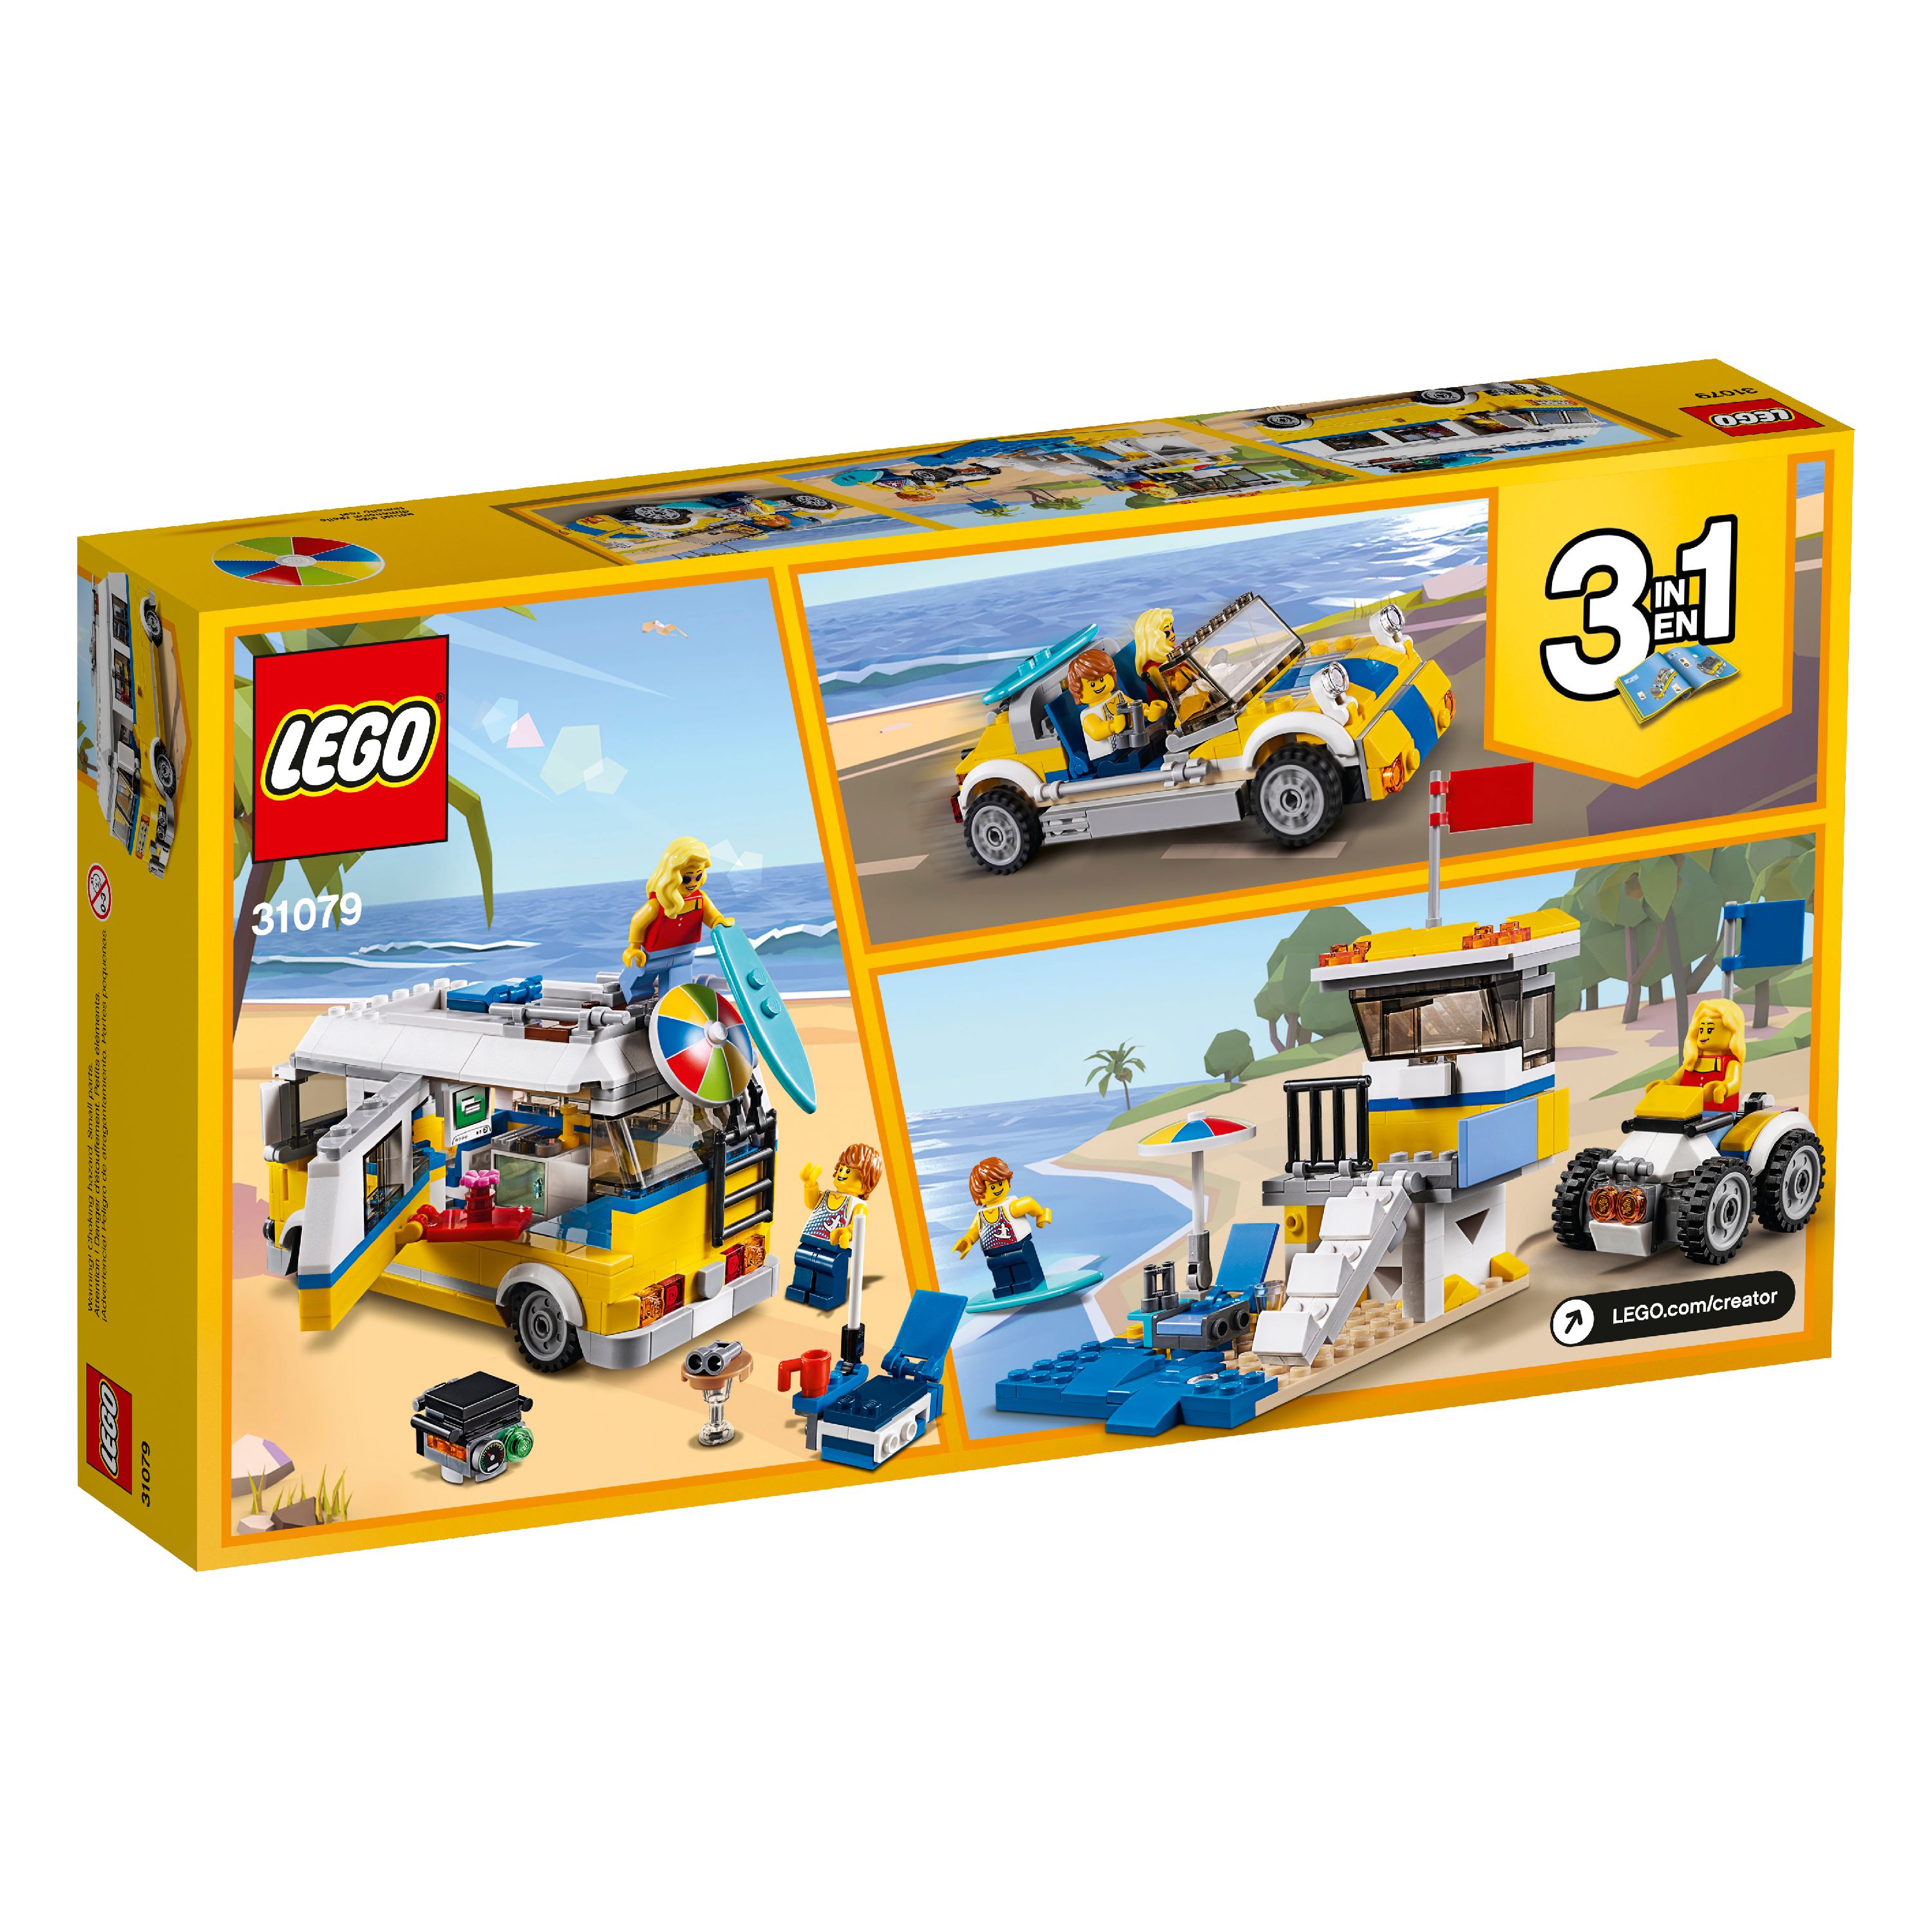 LEGO Creator 3in1 Sunshine Surfer Van 31079 Building Set - image 5 of 7